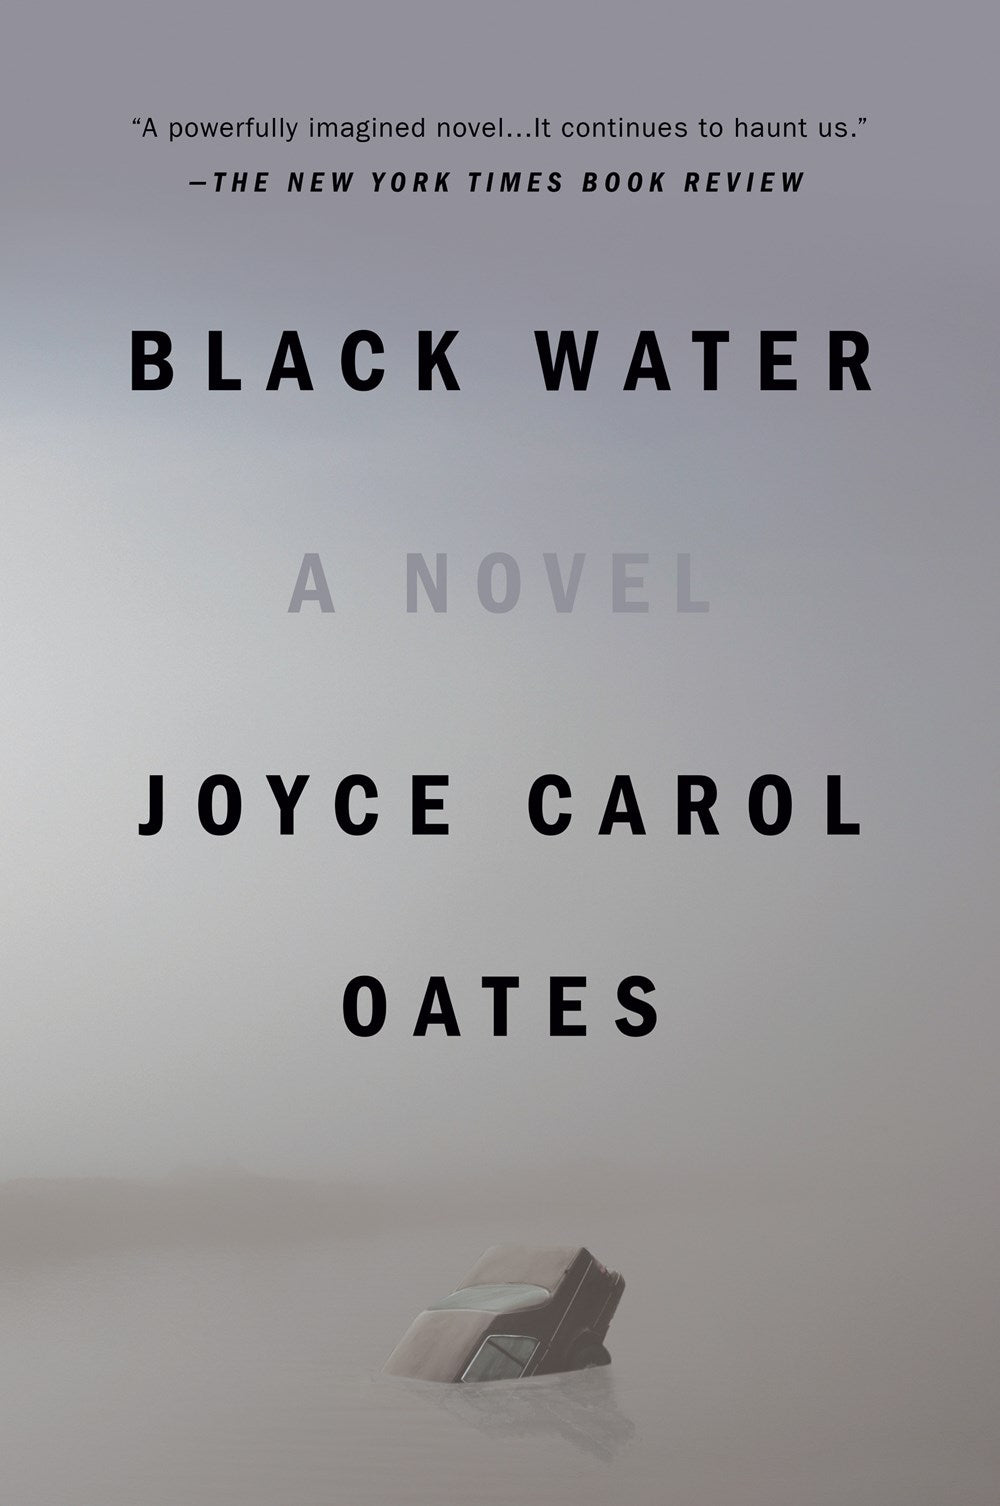 Black Water: A Novel by Joyce Carol Oates